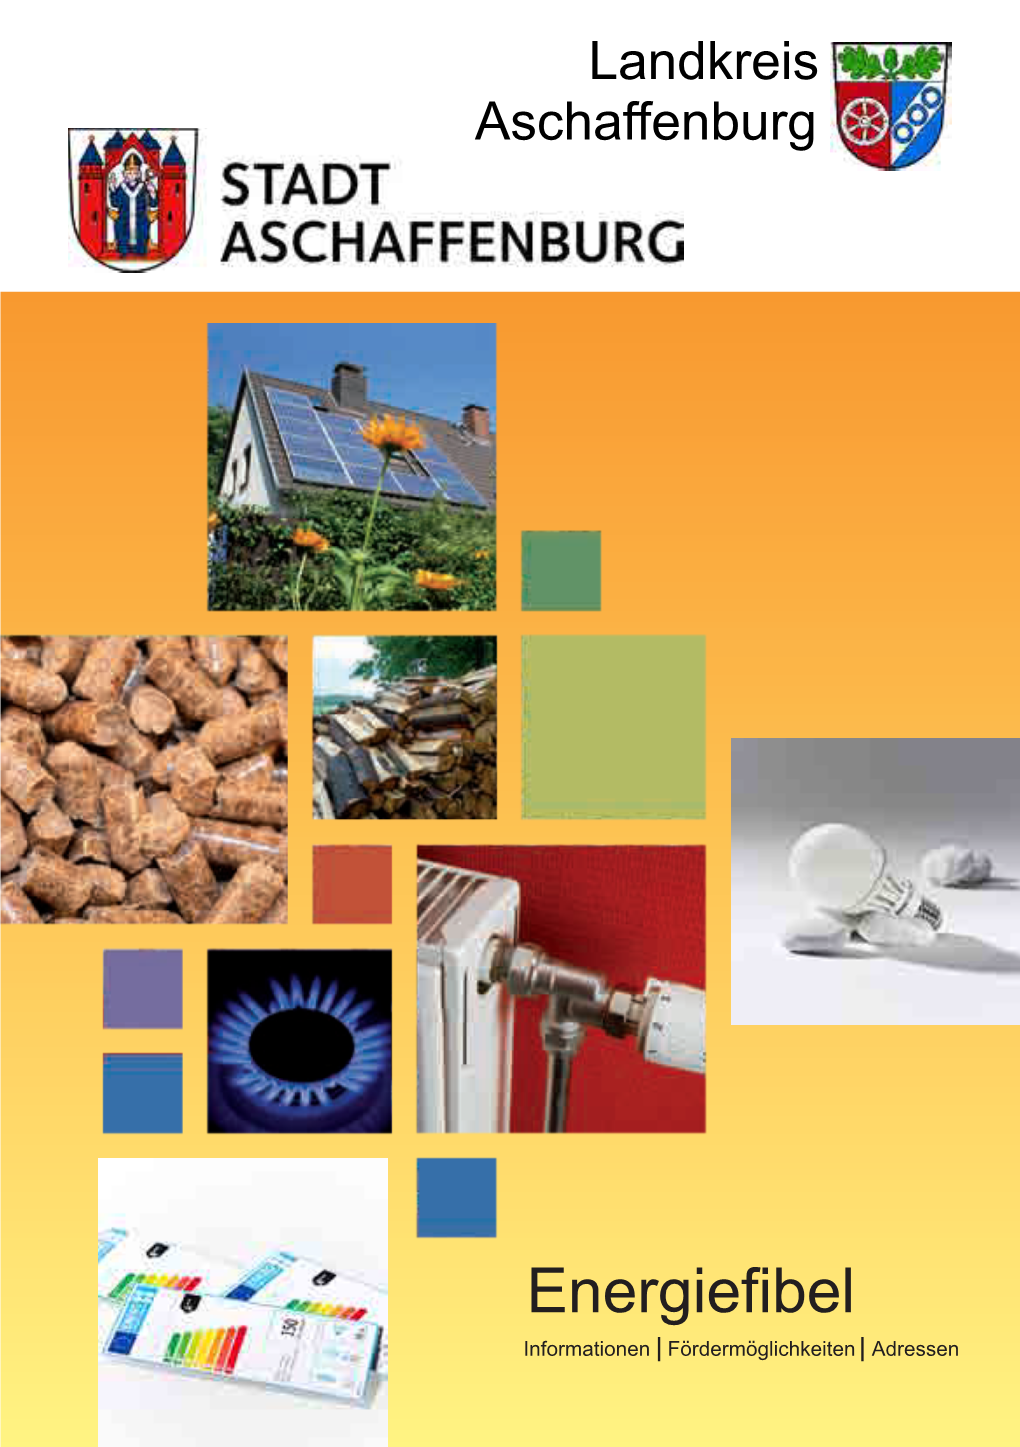 Landkreis Aschaffenburg Grußwort Agenda21 – Nachhaltiges Handeln in Stadt Und Landkreis Aschaffenburg